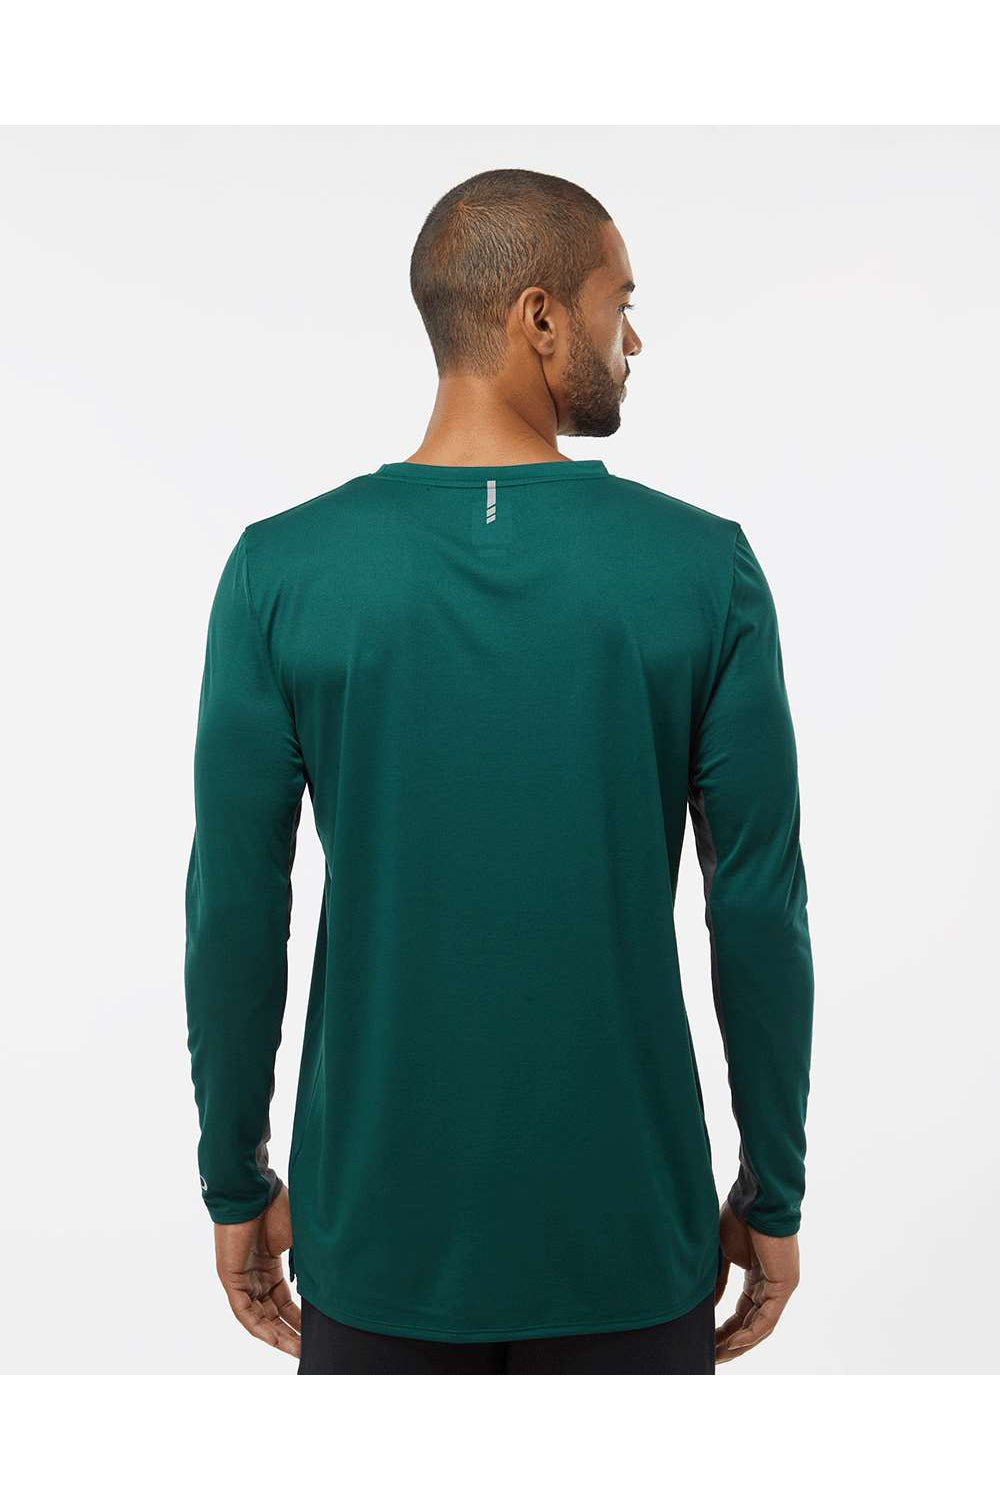 Oakley FOA402992 Mens Team Issue Hydrolix Long Sleeve Crewneck T-Shirt Team Fir Green Model Back